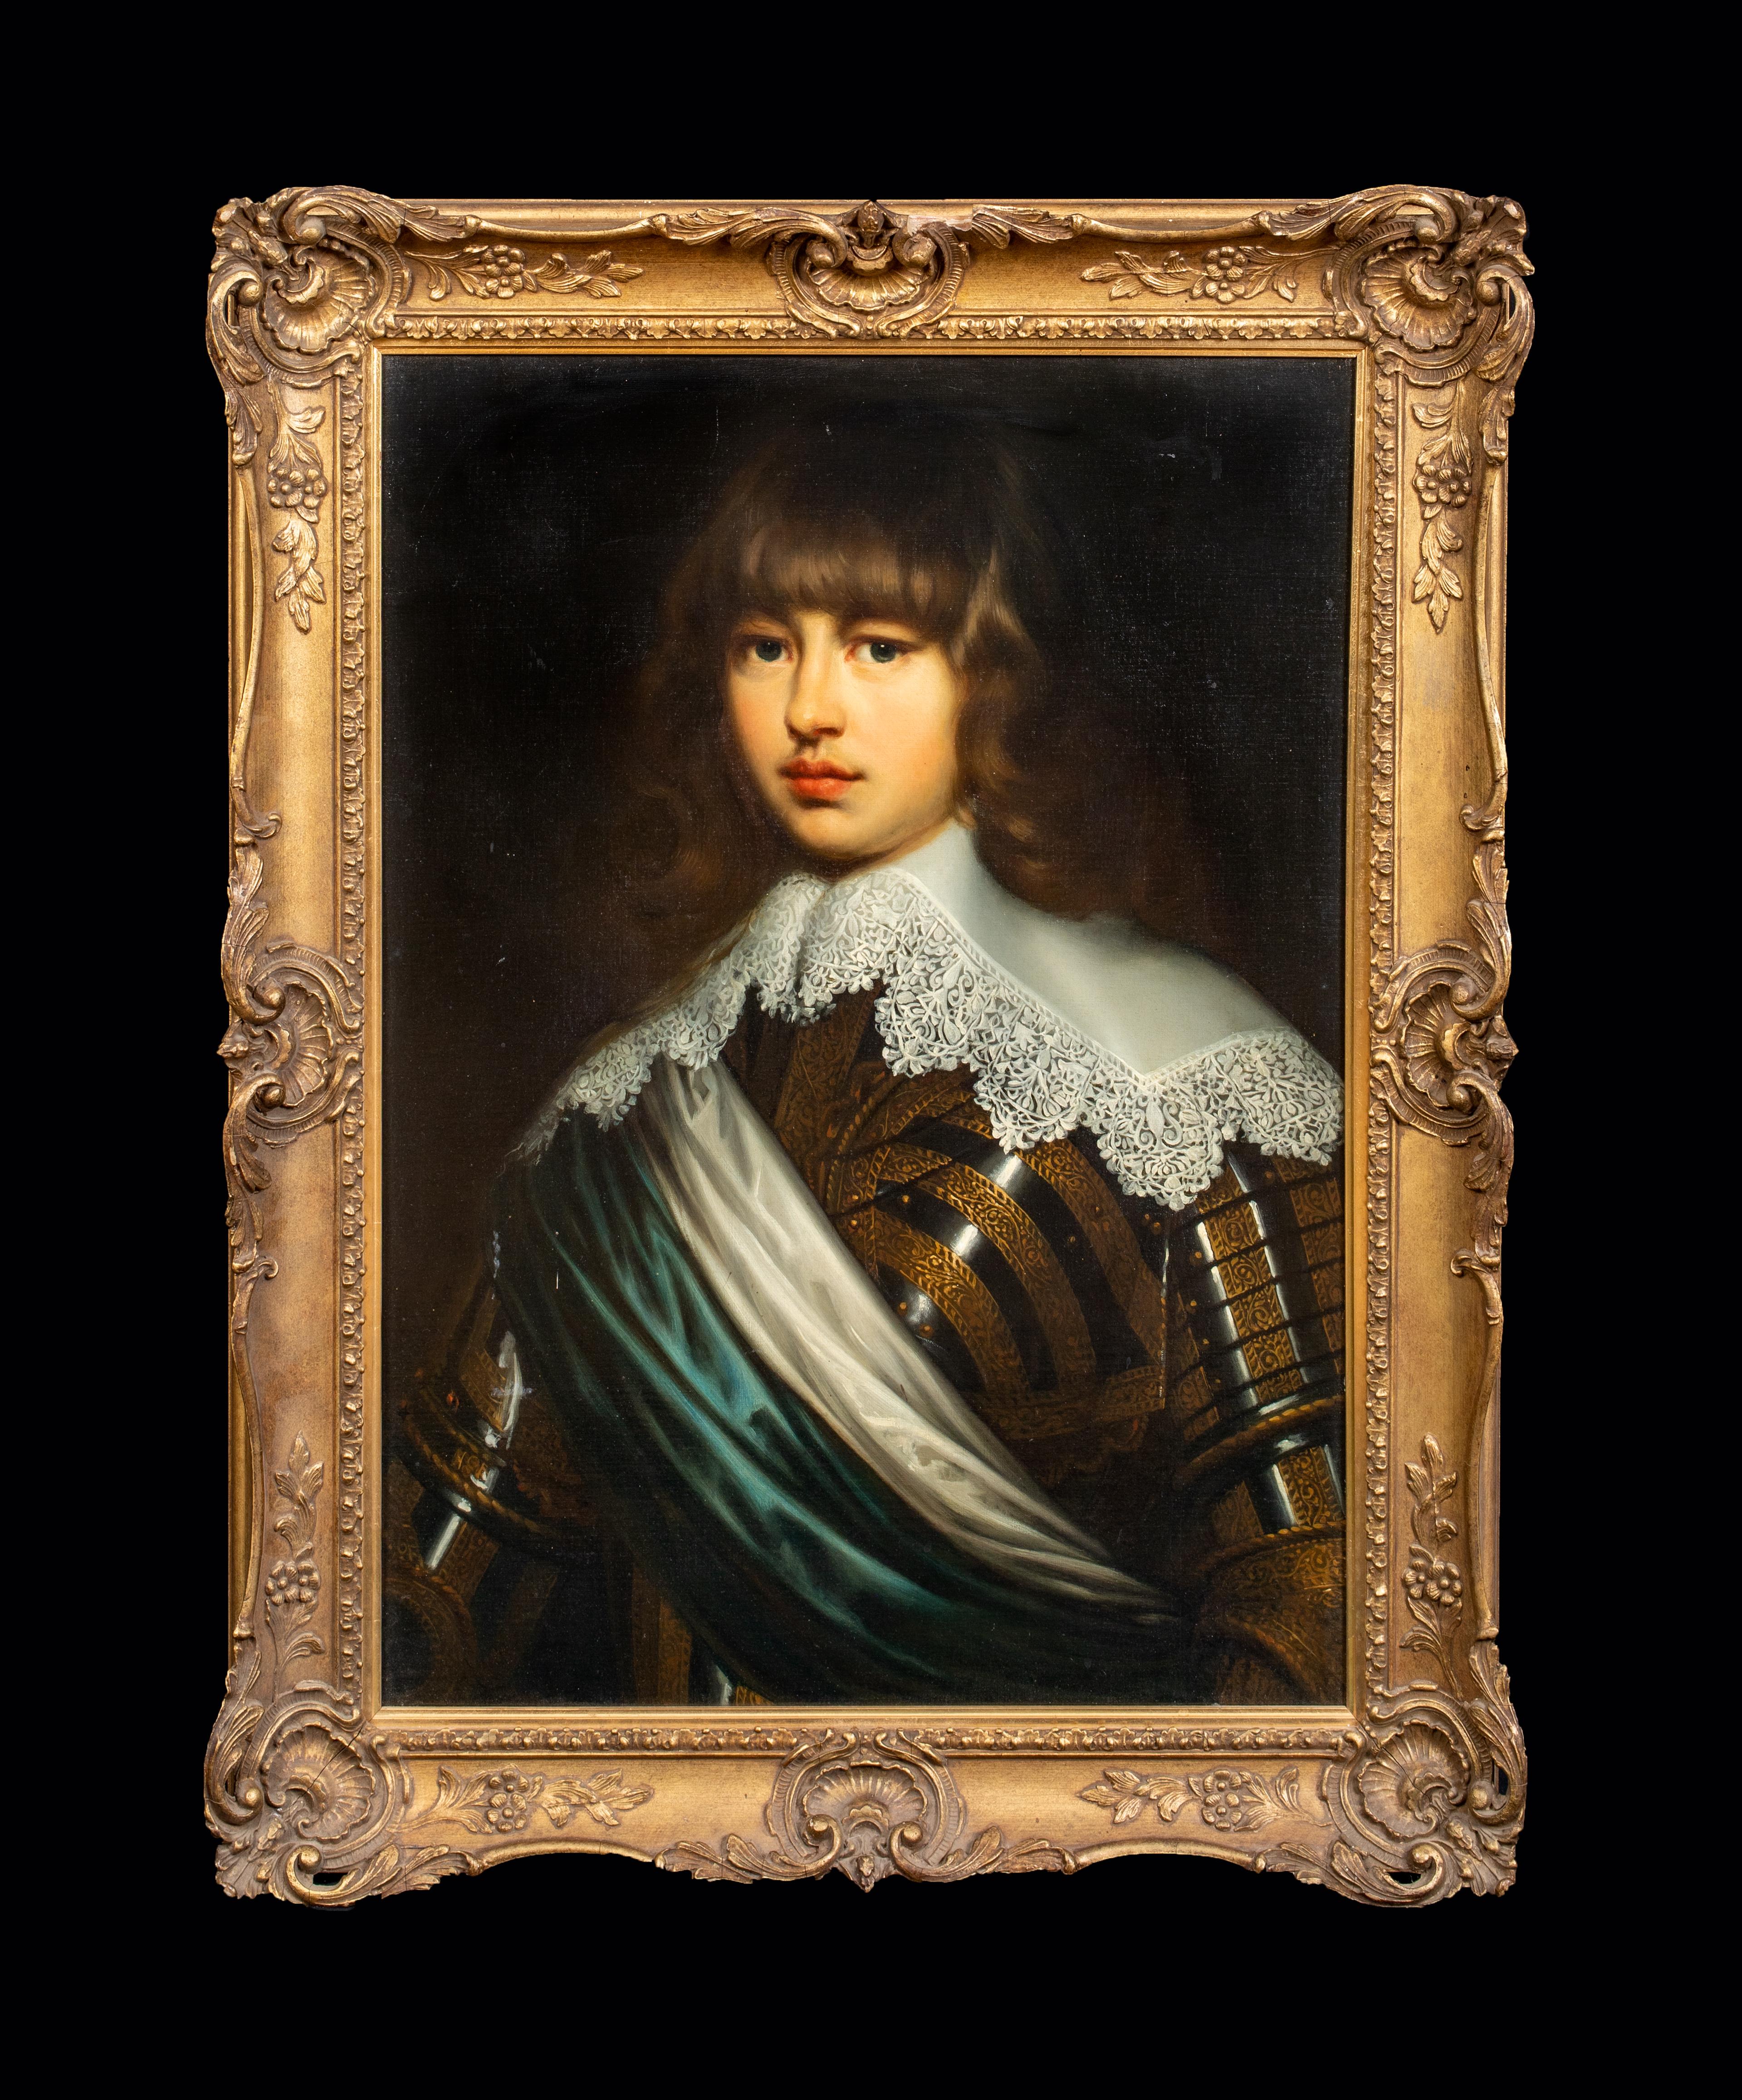 Porträt von Prinz Valdemar Christian aus Schleswig-Holstein, Dänemark 1622-1656 – Painting von Justus Sustermans